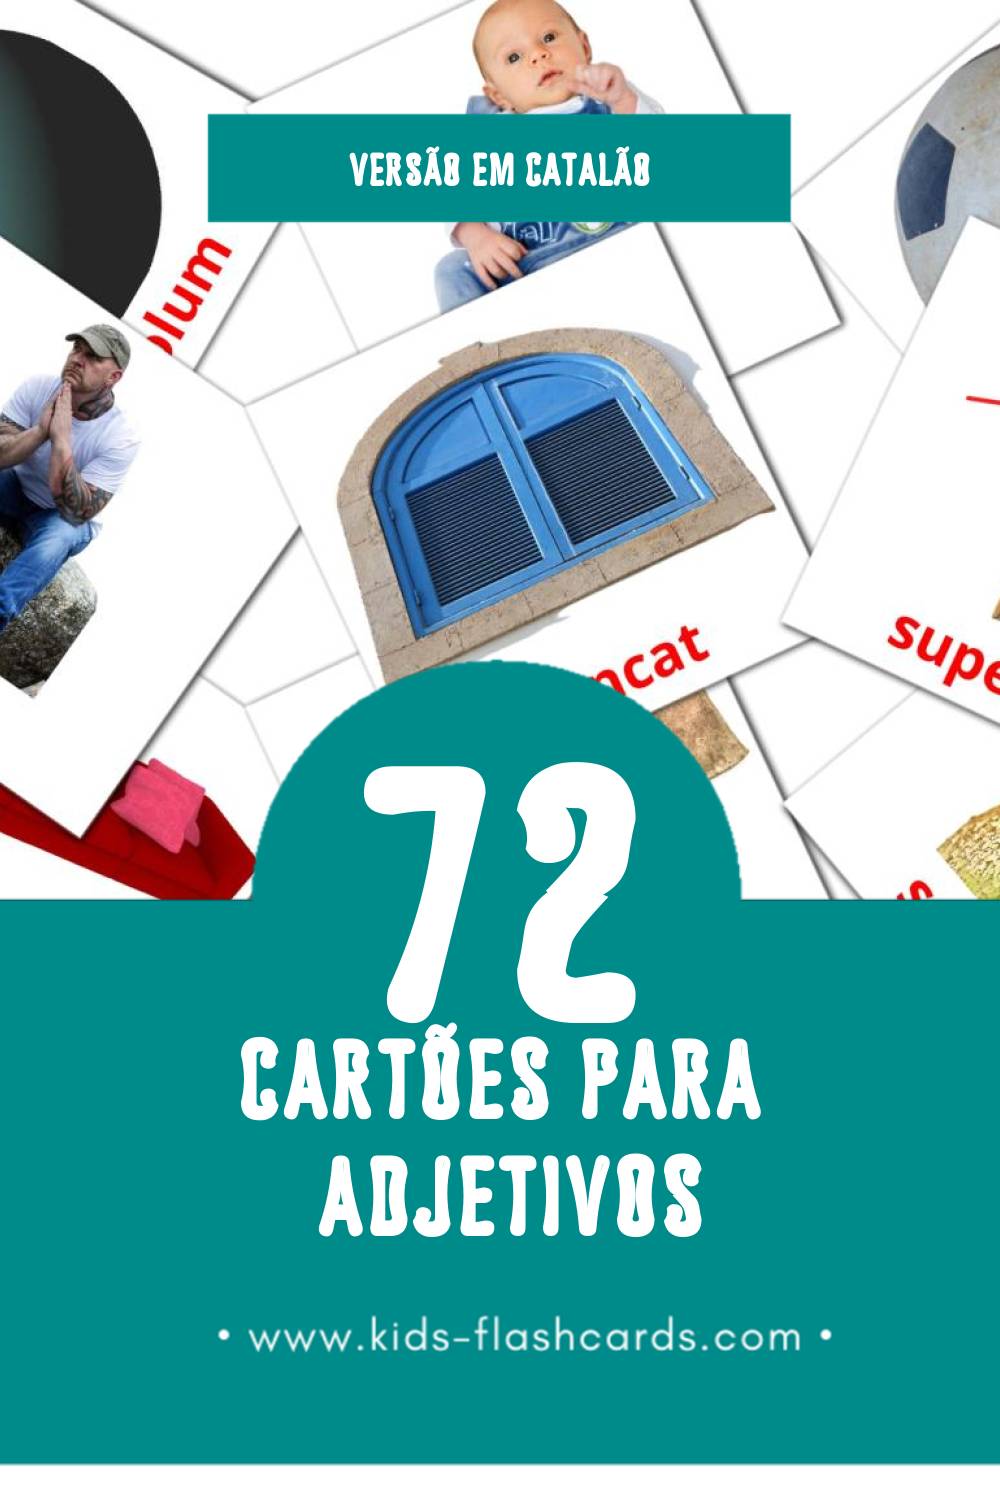 Flashcards de Adjectius Visuais para Toddlers (72 cartões em Catalão)